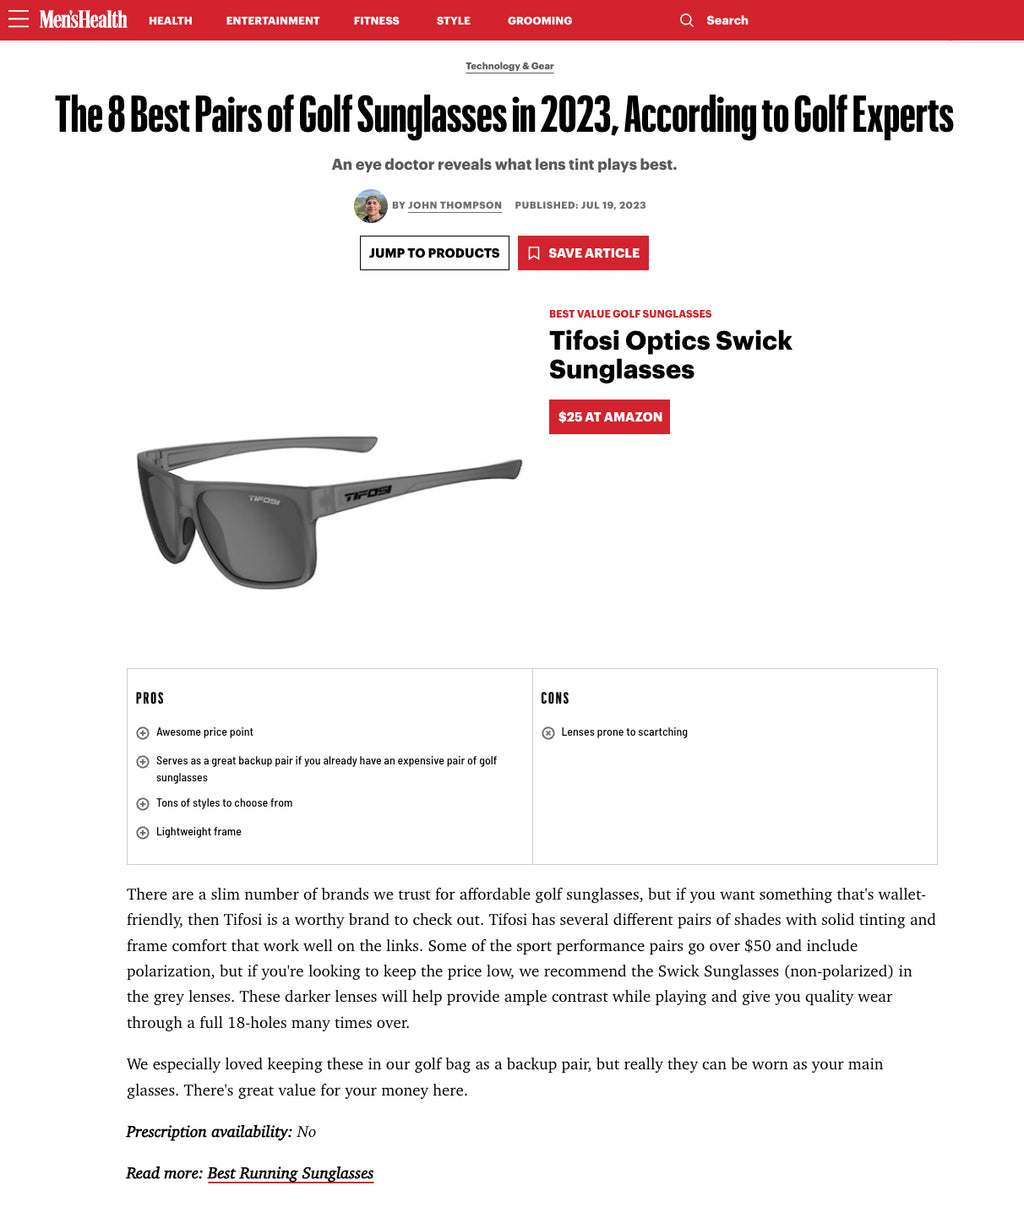 Swick Sunglasses Review - Runners World Magazine August 2023 (UK) - Tifosi  Optics